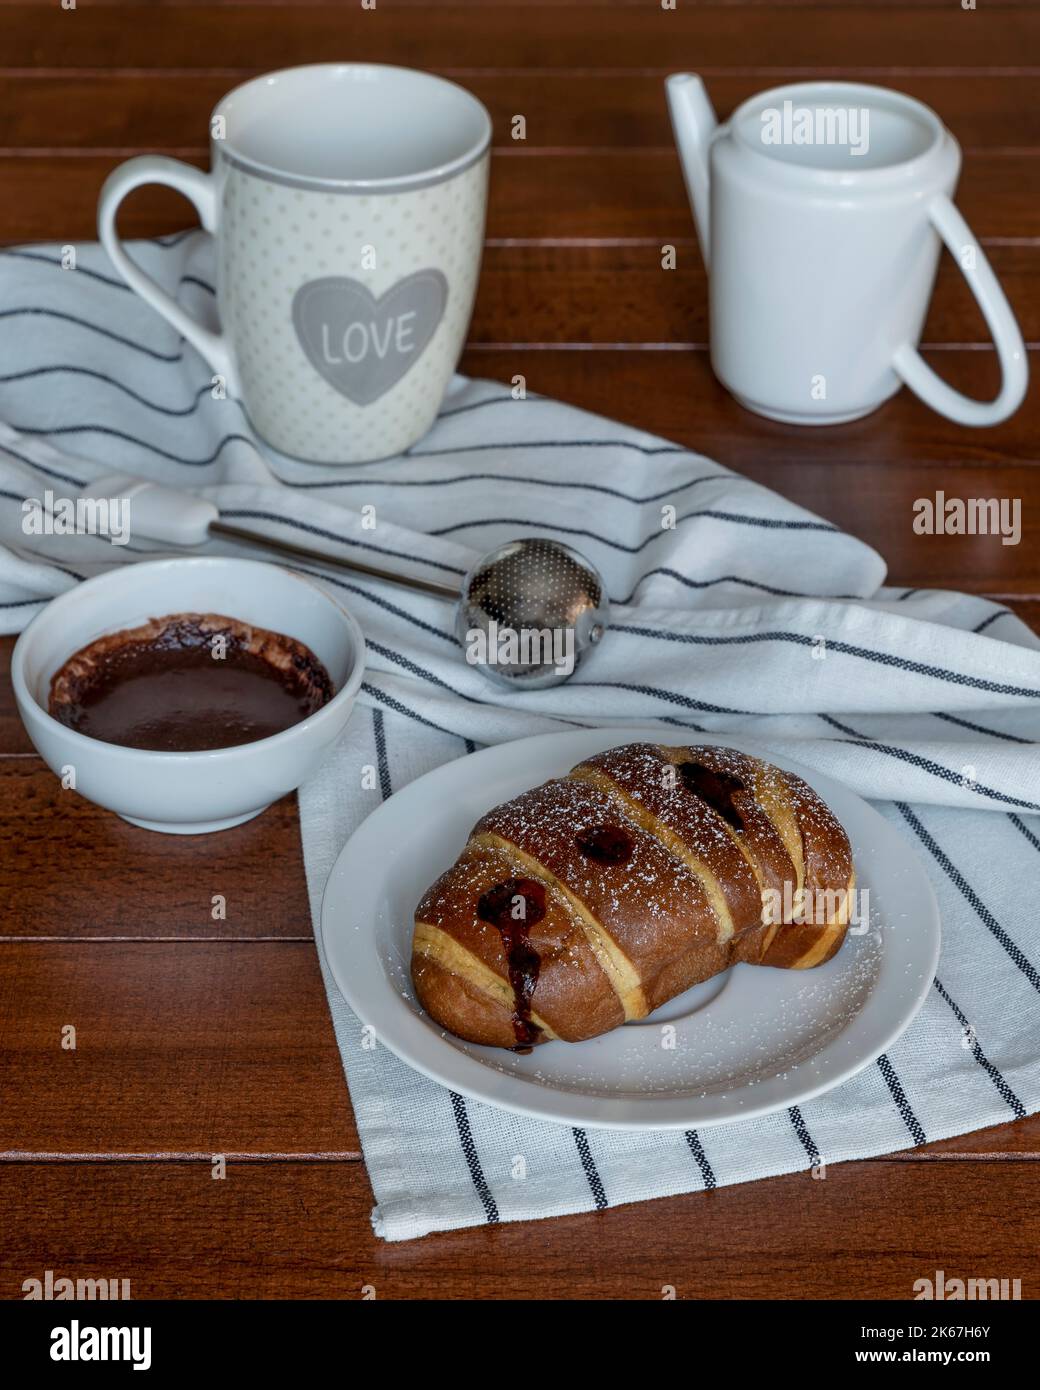 Un croissant au chocolat recouvert de sucre en poudre sur une table en bois avec une tasse blanche et une carafe à côté Banque D'Images